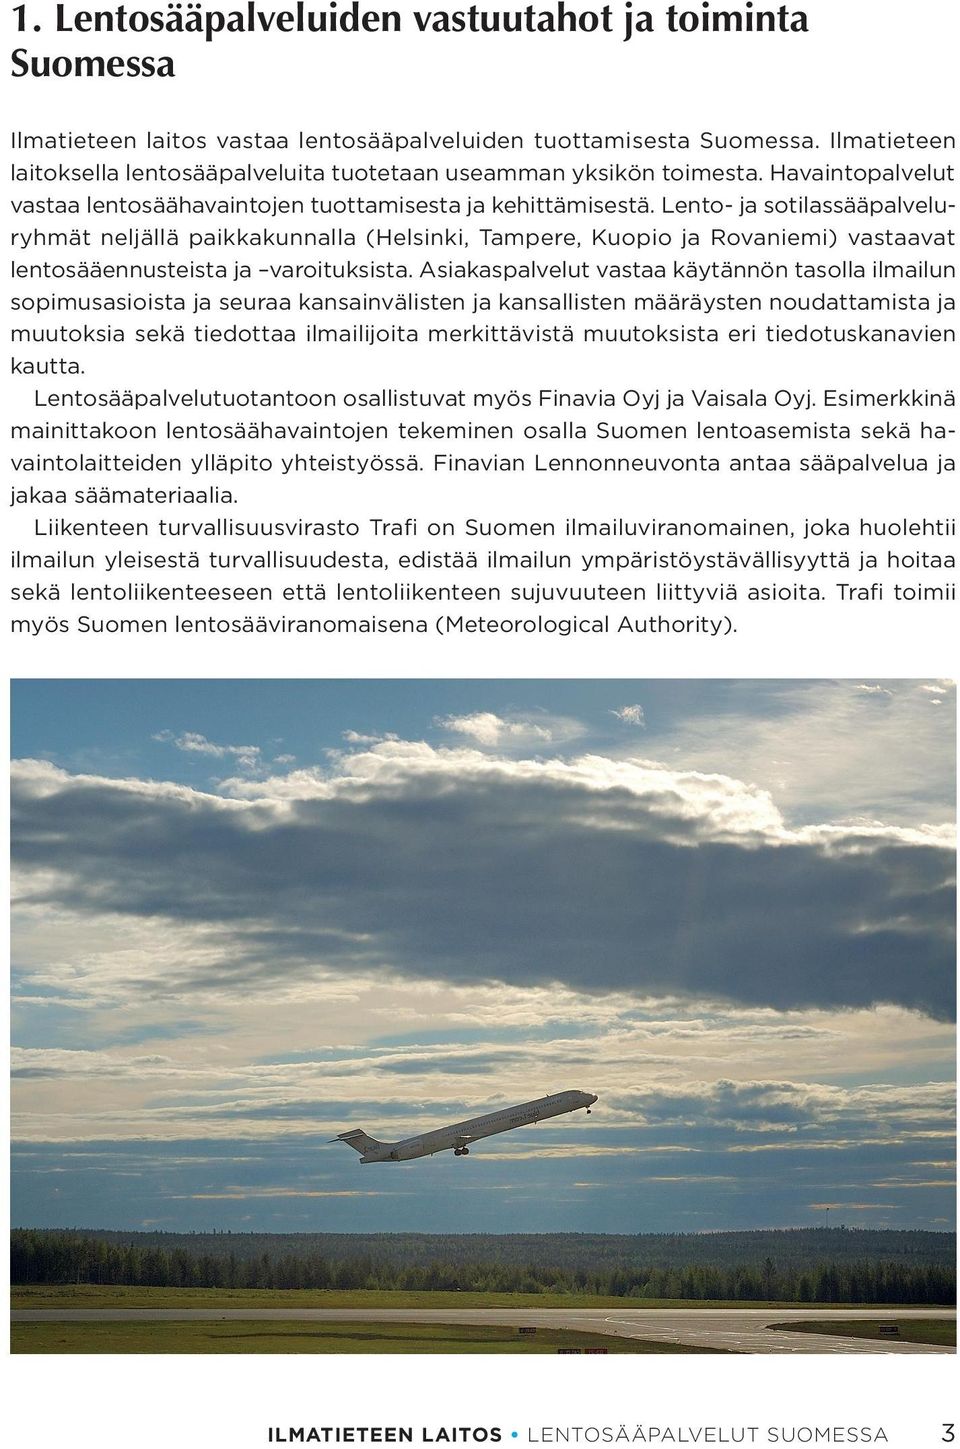 Lento- ja sotilassääpalveluryhmät neljällä paikkakunnalla (Helsinki, Tampere, Kuopio ja Rovaniemi) vastaavat lentosääennusteista ja varoituksista.